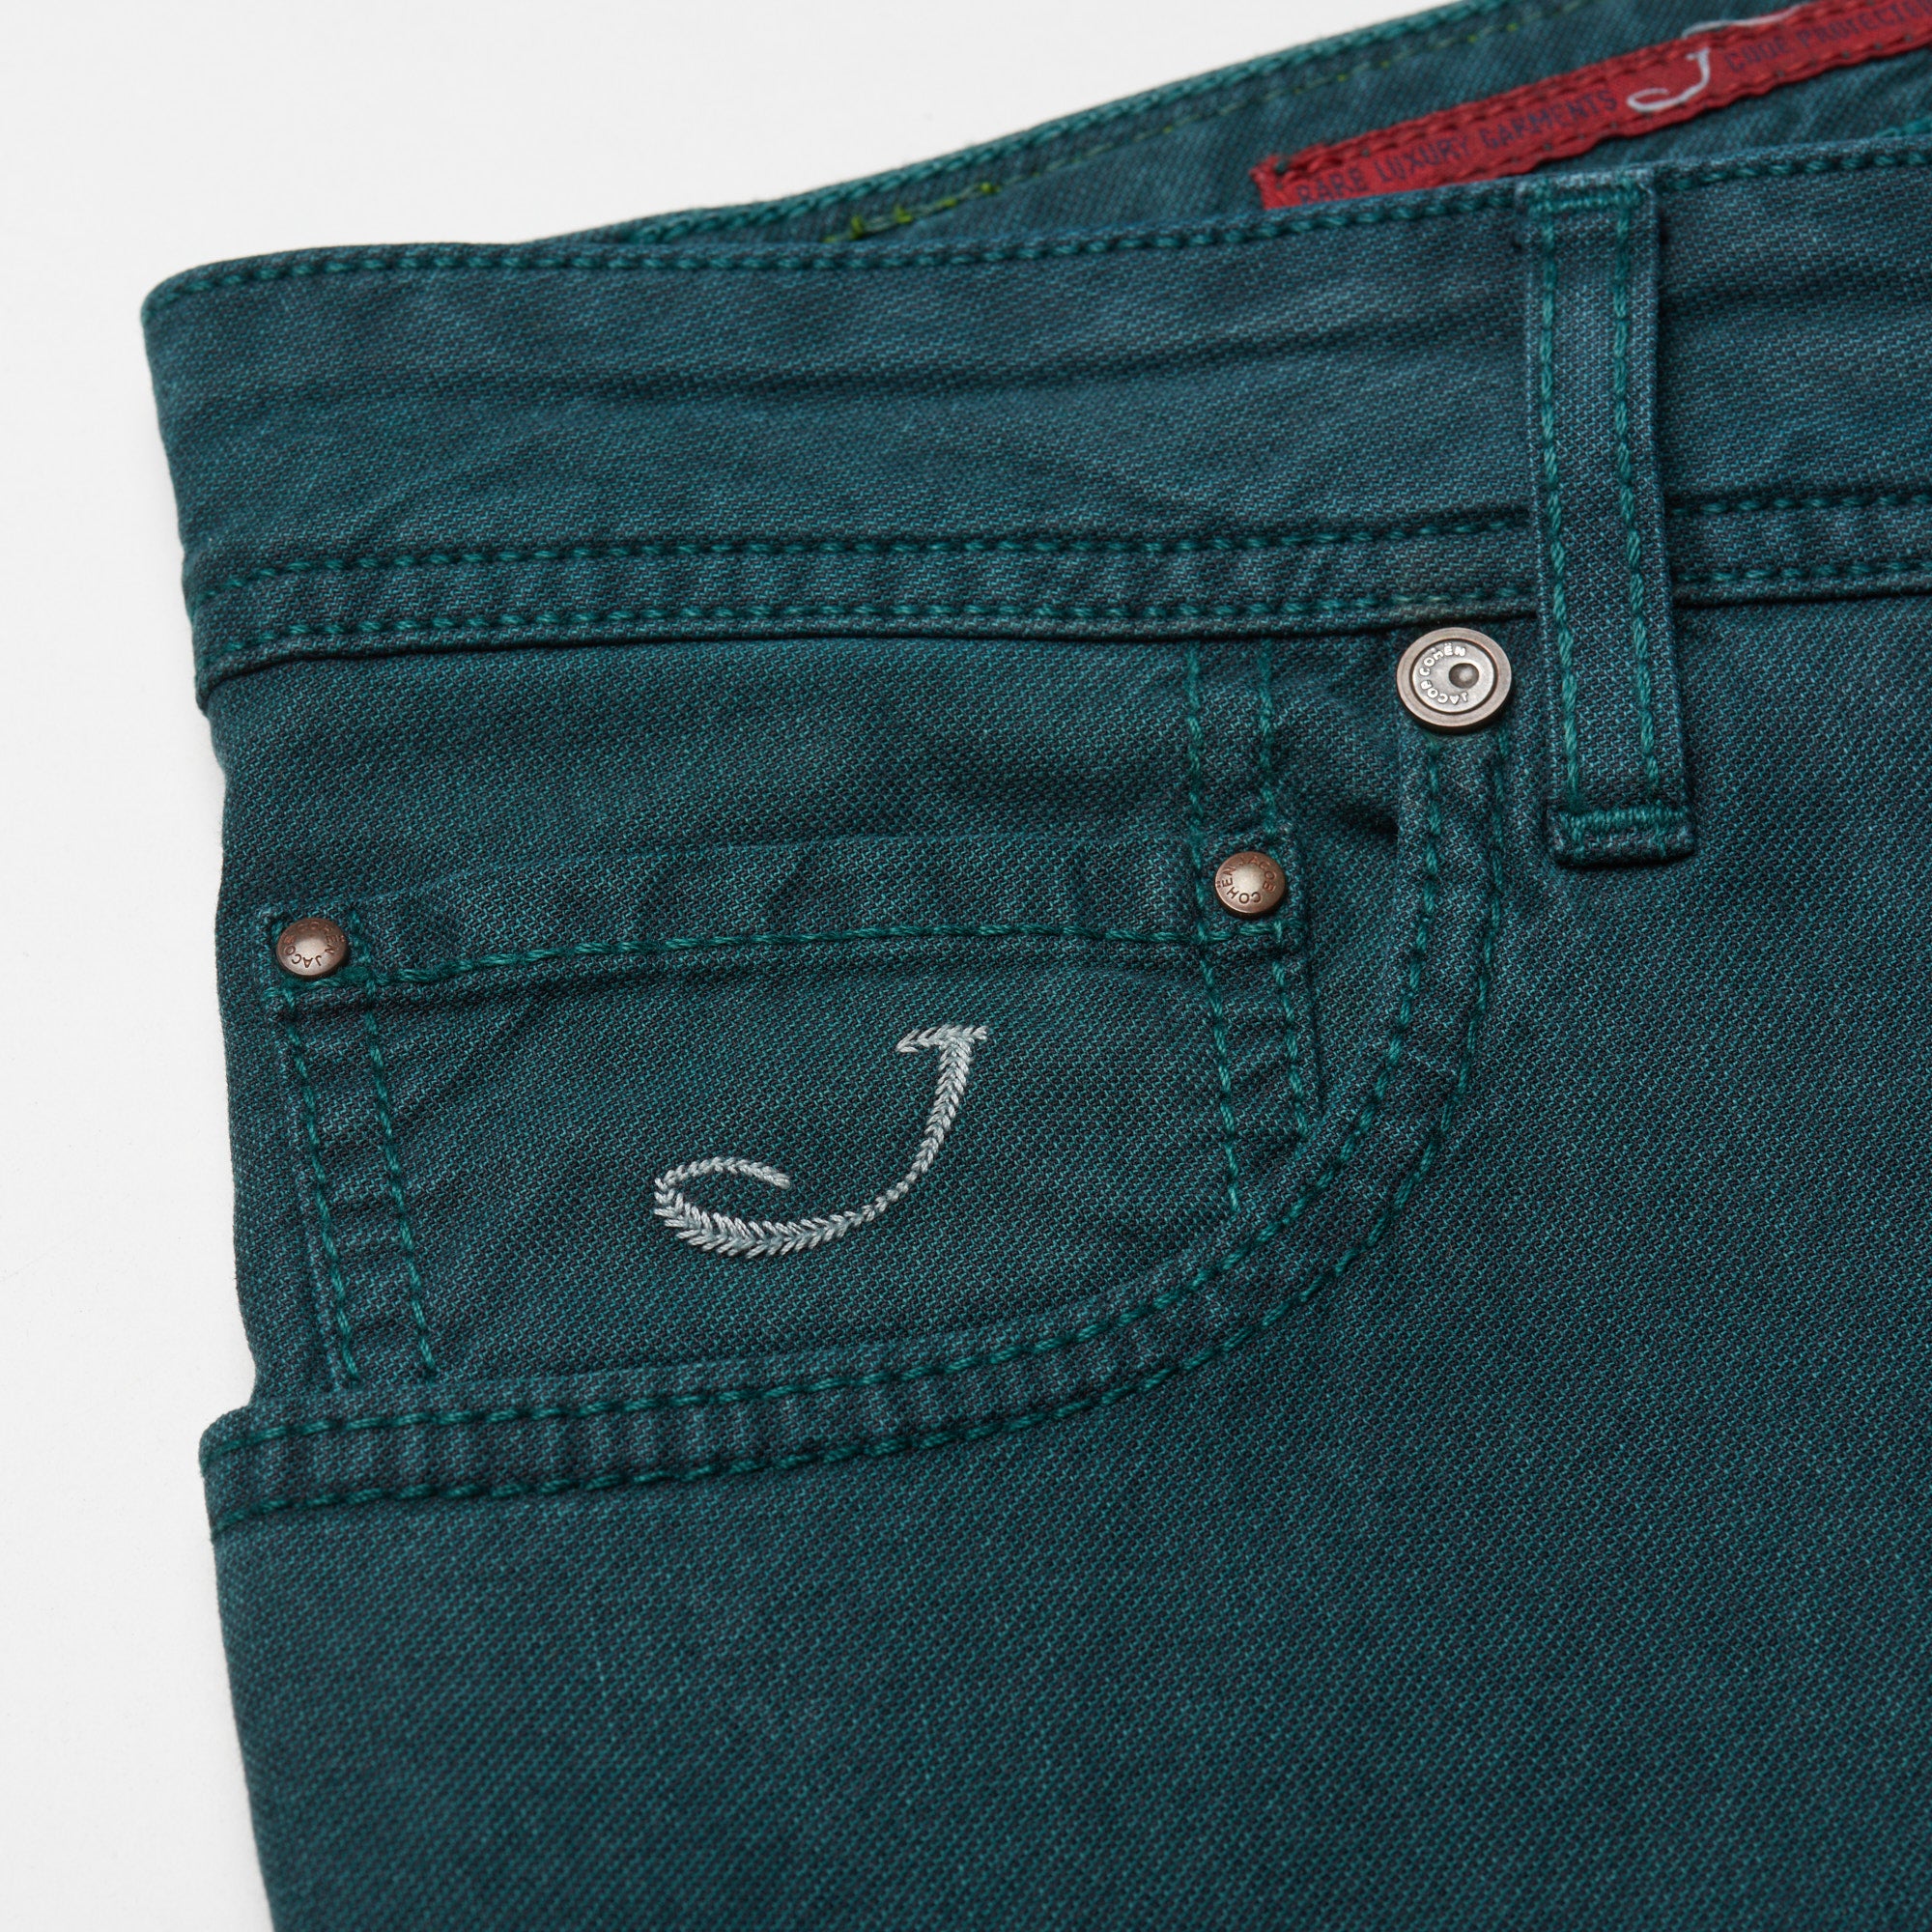 JACOB COHEN J688 Comfort Vintage Green Cotton Stretch Slim Fit Jeans Pants US 33